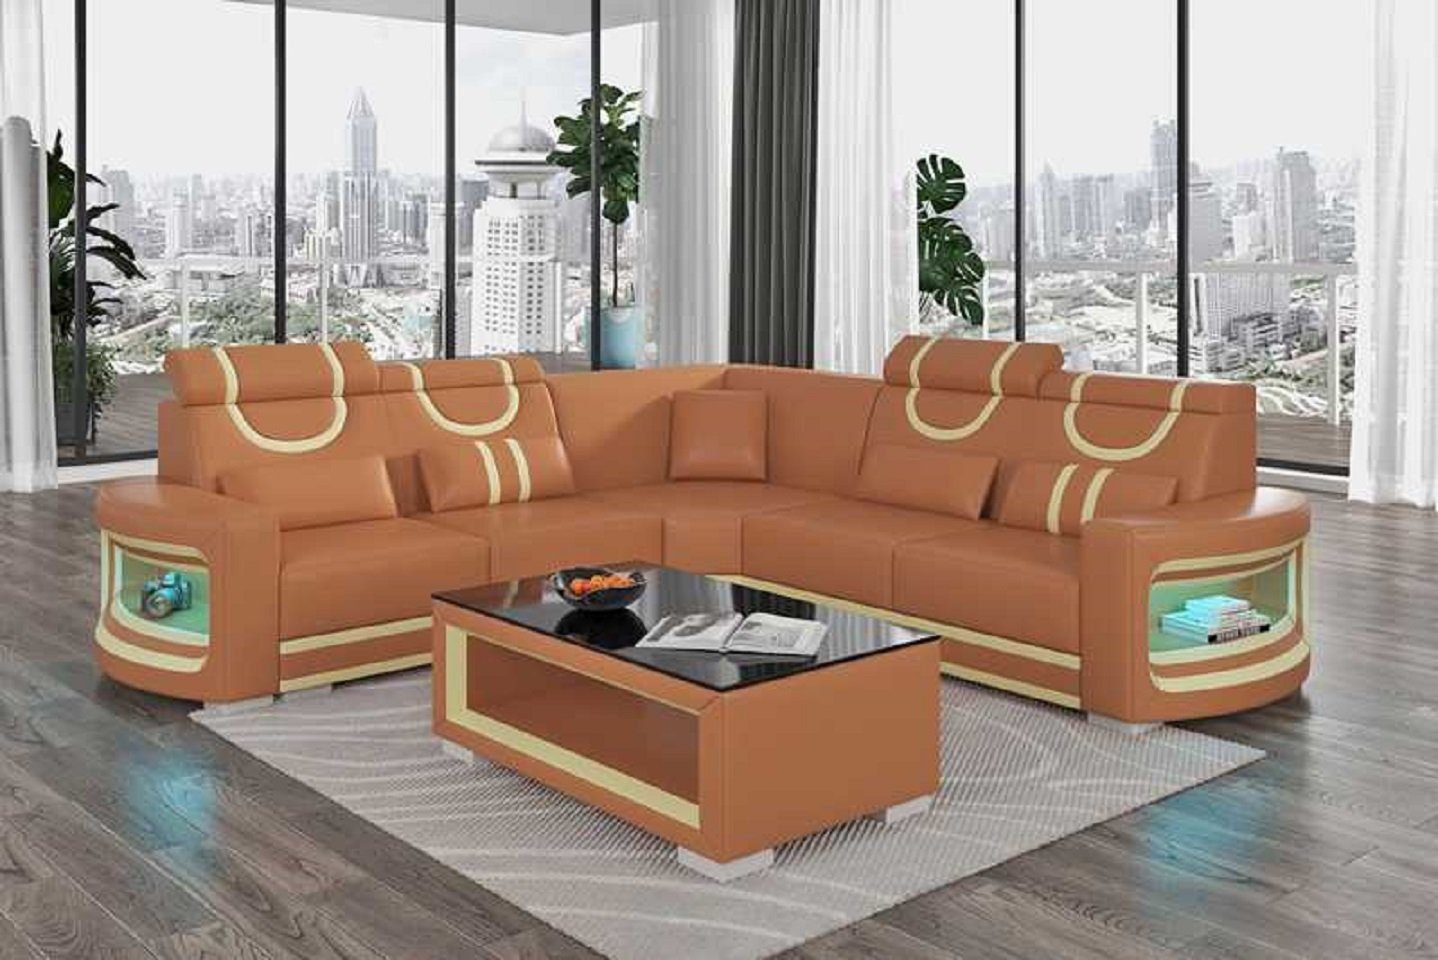 Neu, Wohnzimmer Ecksofa Form Design Europe Luxus Couch in Teile, L Braun Made JVmoebel Sofa Modern Ecksofa 3